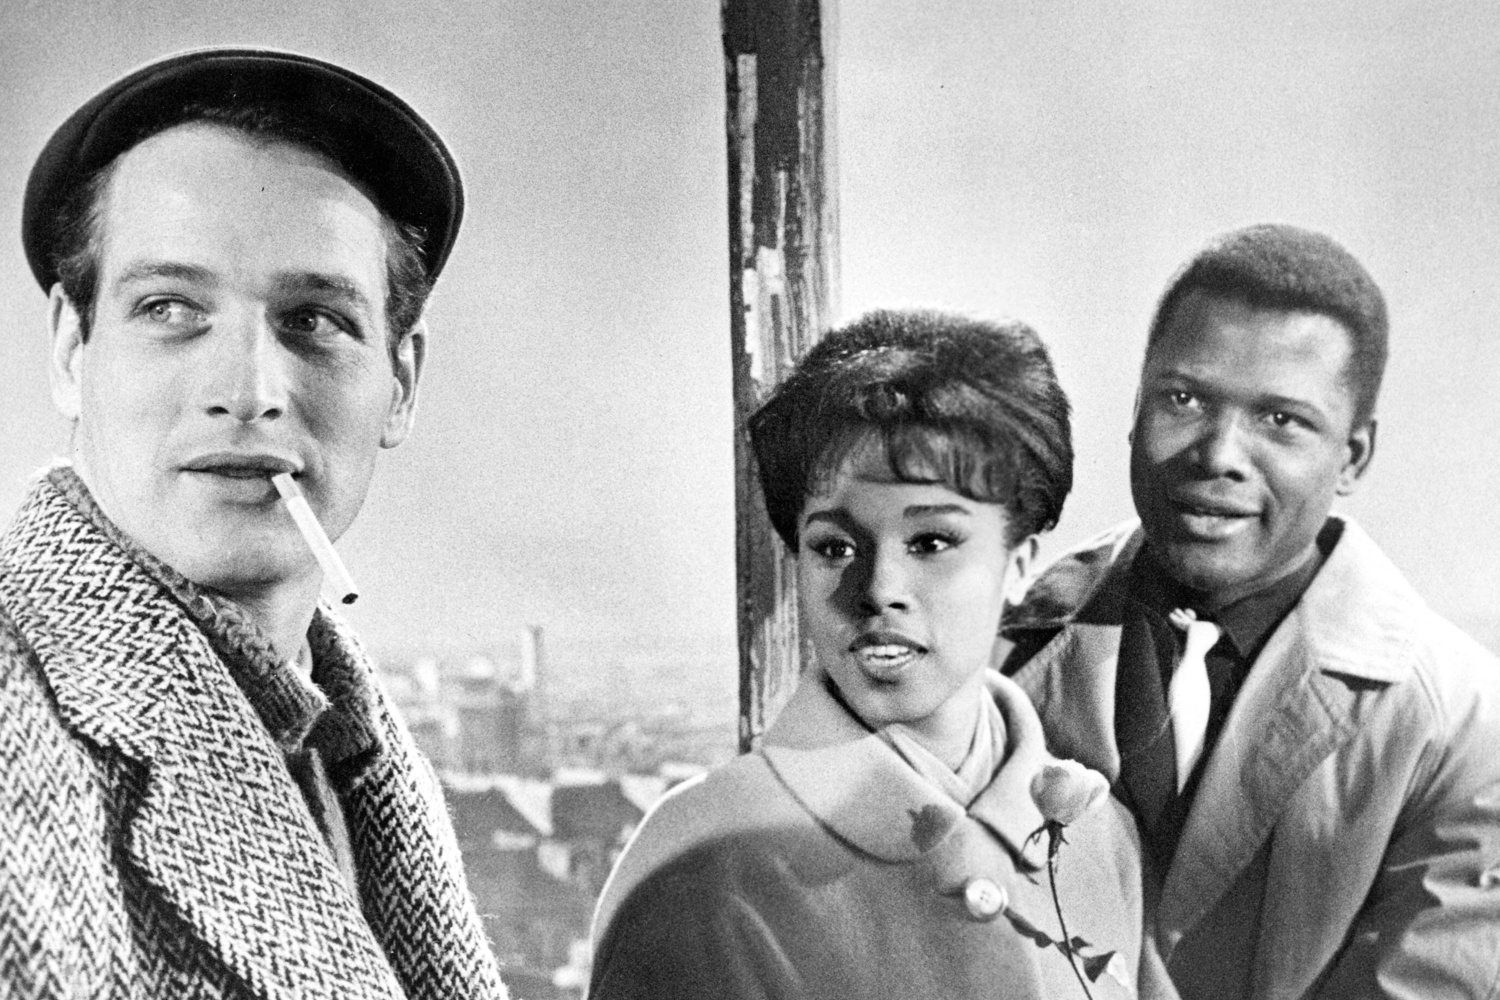 Paris Blues. 1961. Directed by Martin Ritt